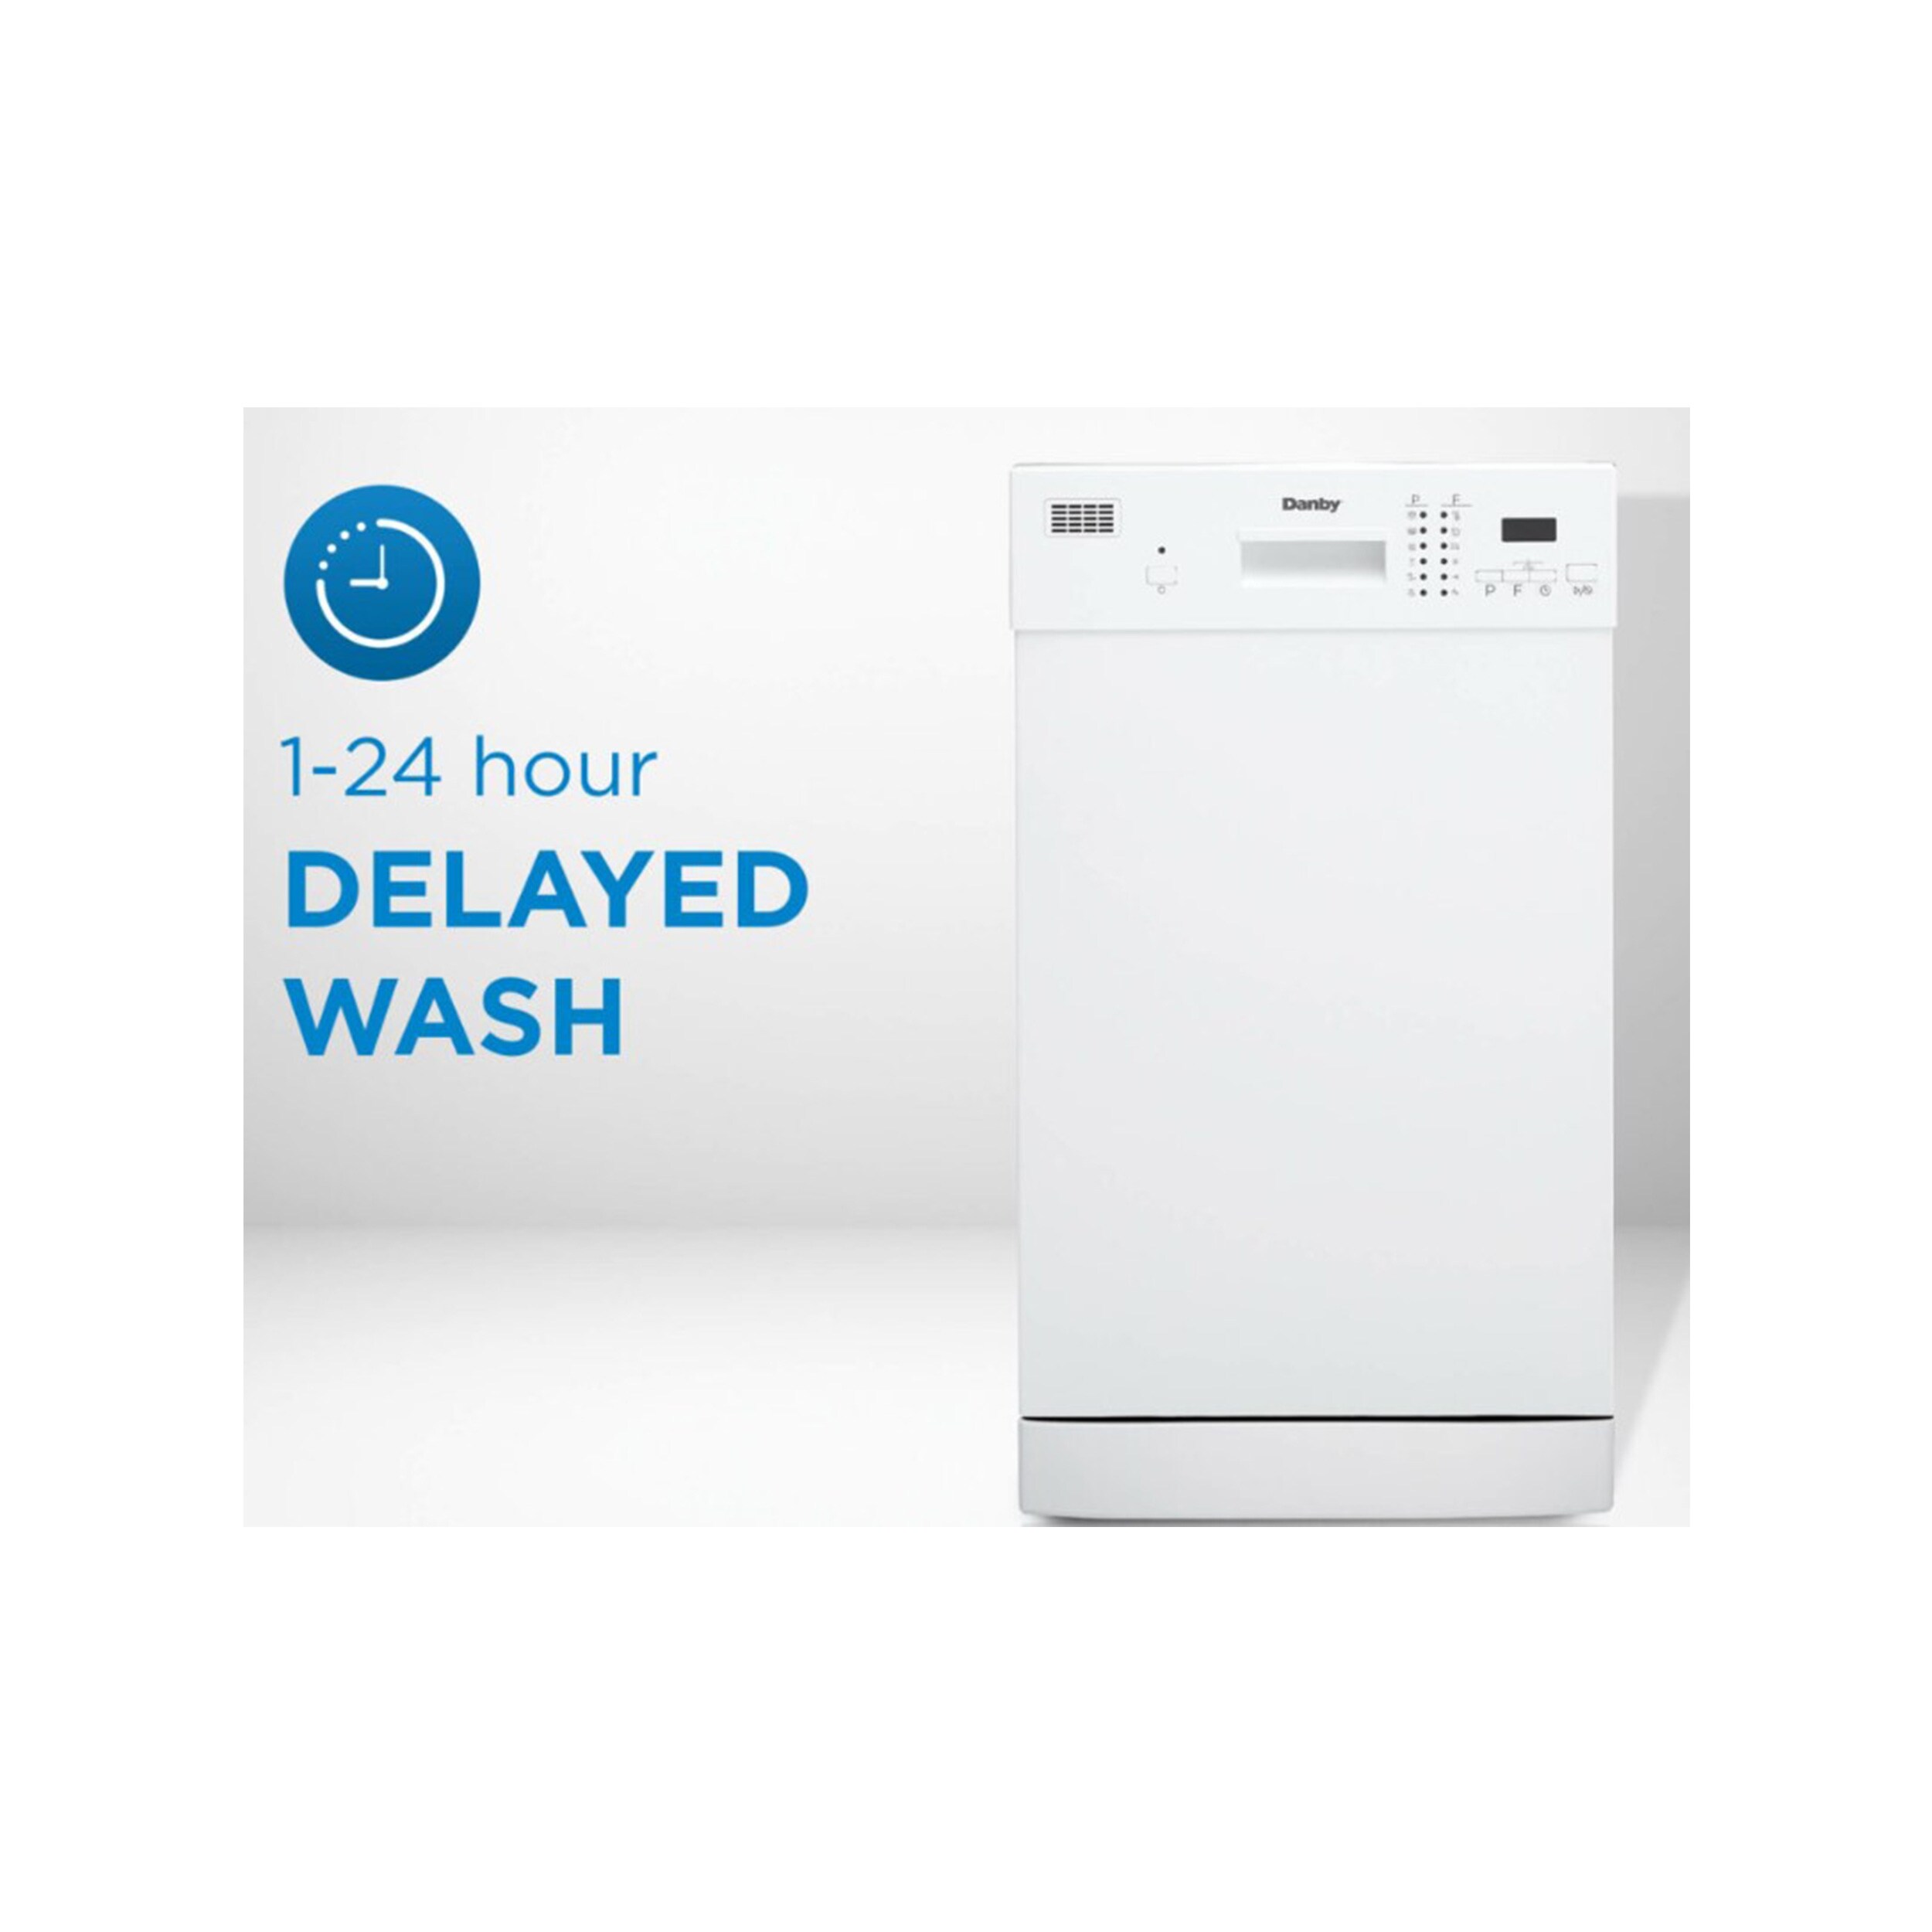 DDW1804EW by Danby - Danby 18 Wide Built-in Dishwasher in White